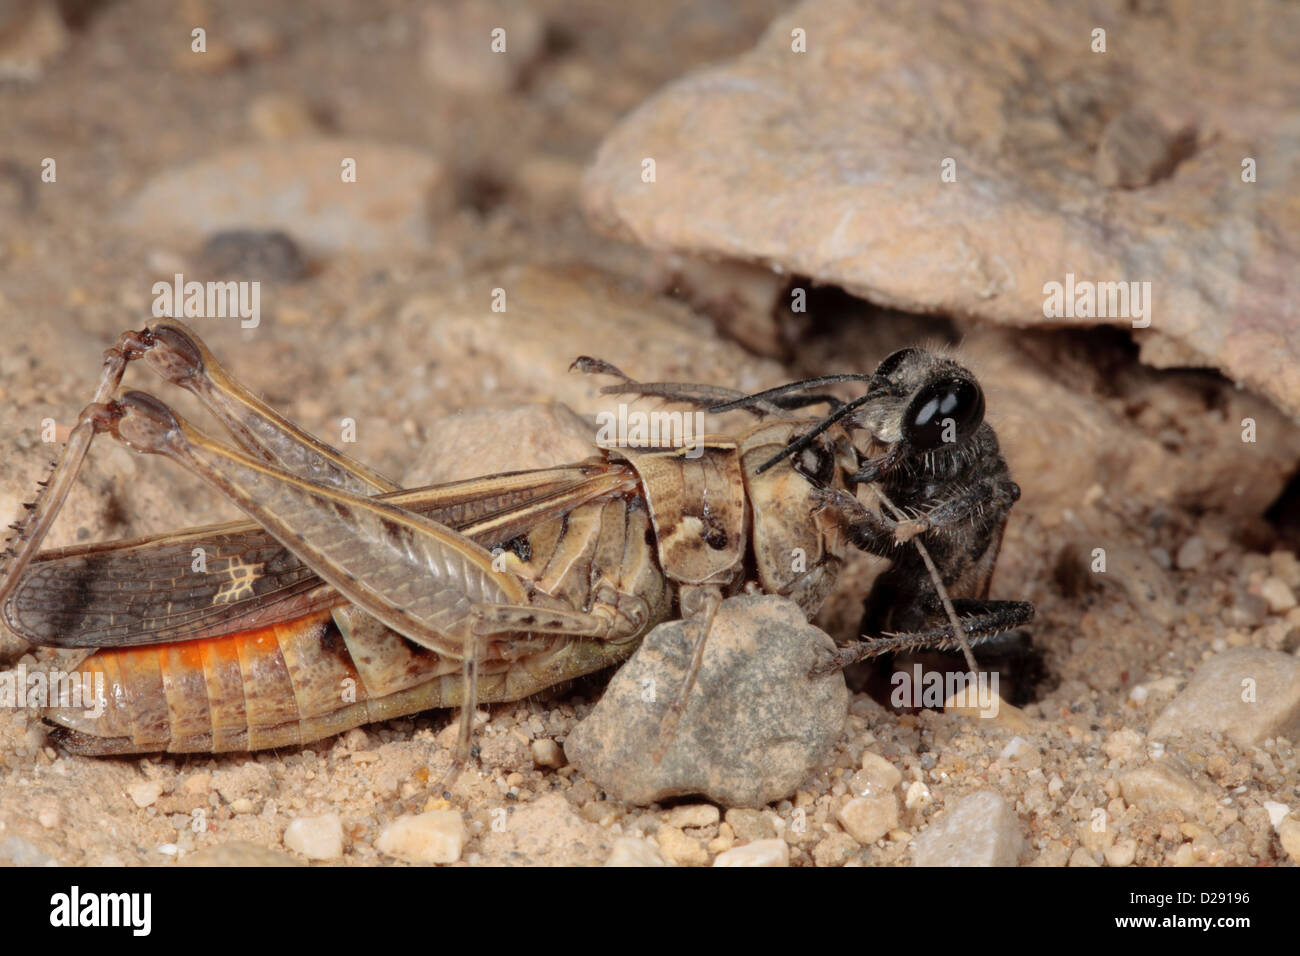 Femme Digger Wasp (Prionyx kirbii) en faisant glisser dans sa proie paralysée grasshopper terrier de nidification. Banque D'Images